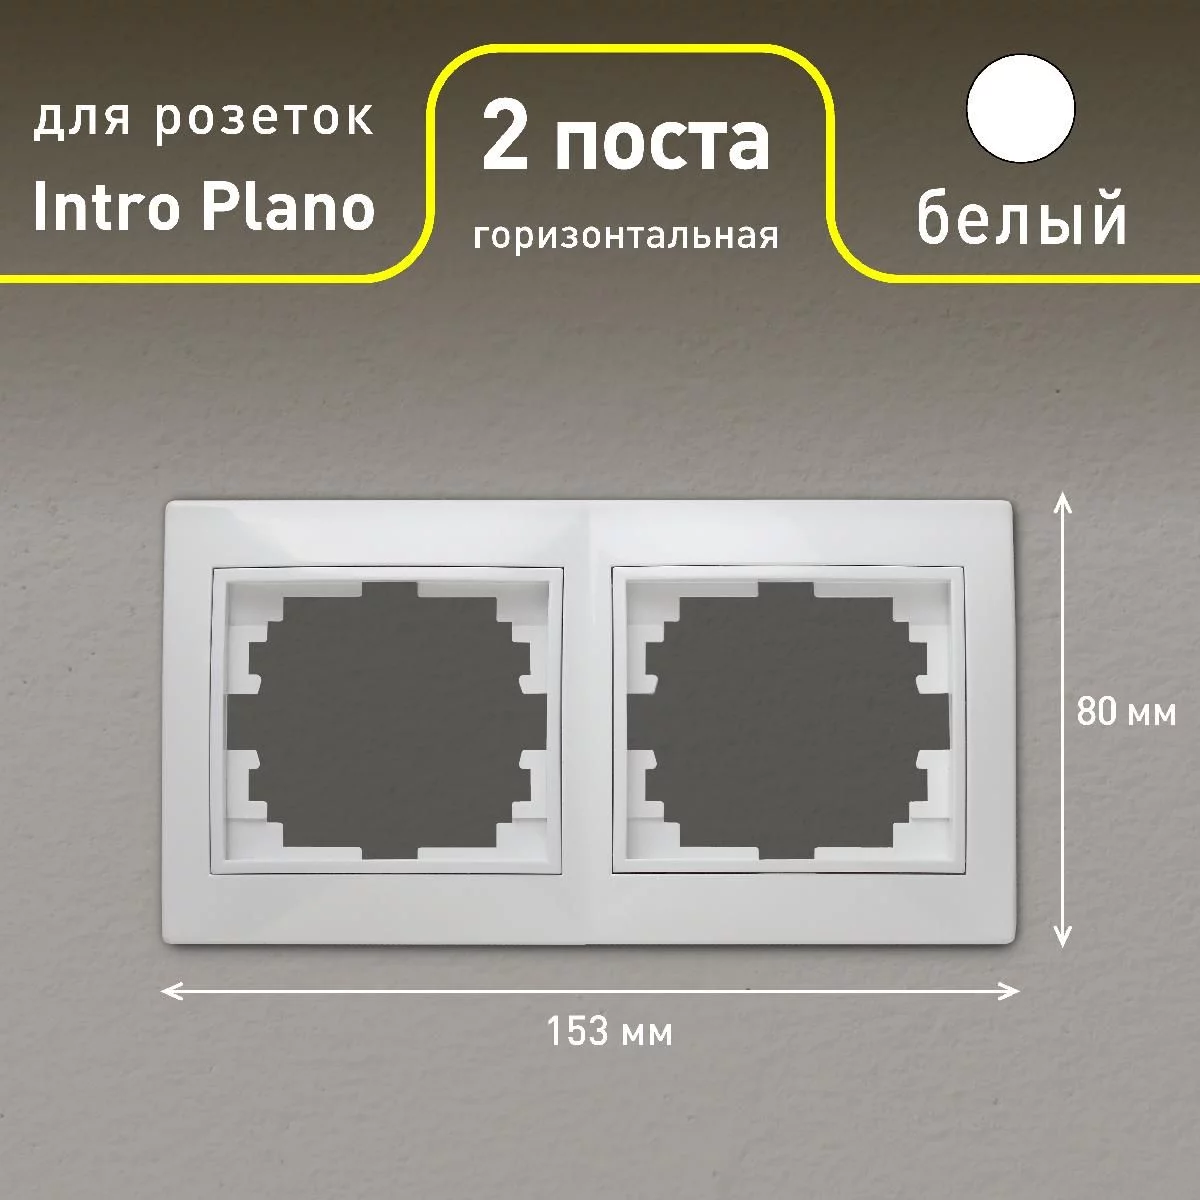 Рамка для розеток и выключателей Intro Plano 1-502-01 на 2 поста горизонтальная, СУ, белый